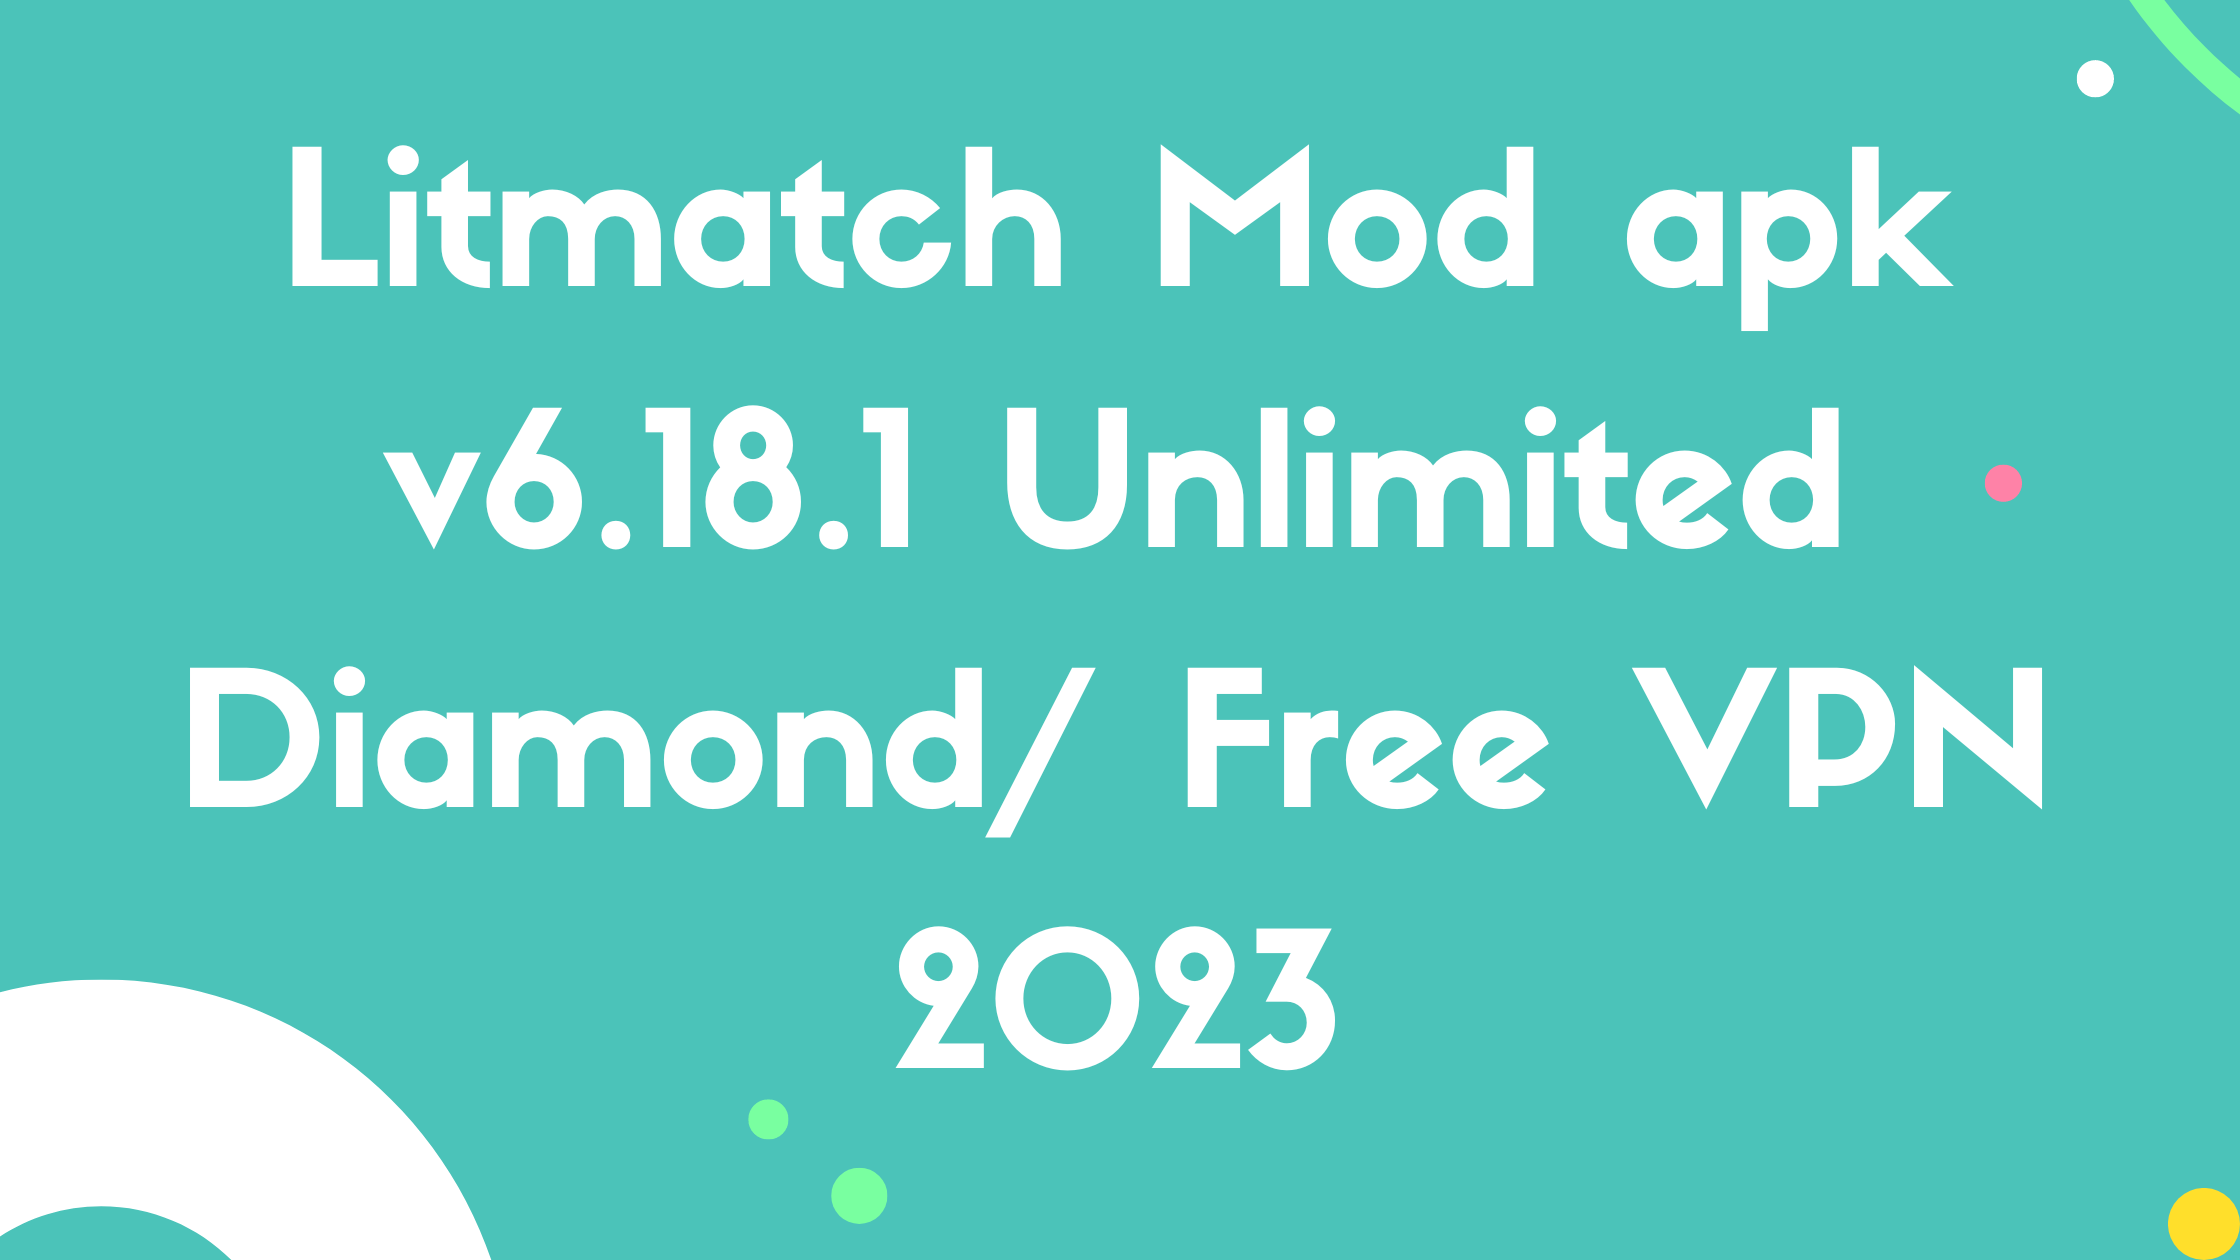 Litmatch Mod apk v6.18.1 Unlimited Diamond/ Free VPN 2023